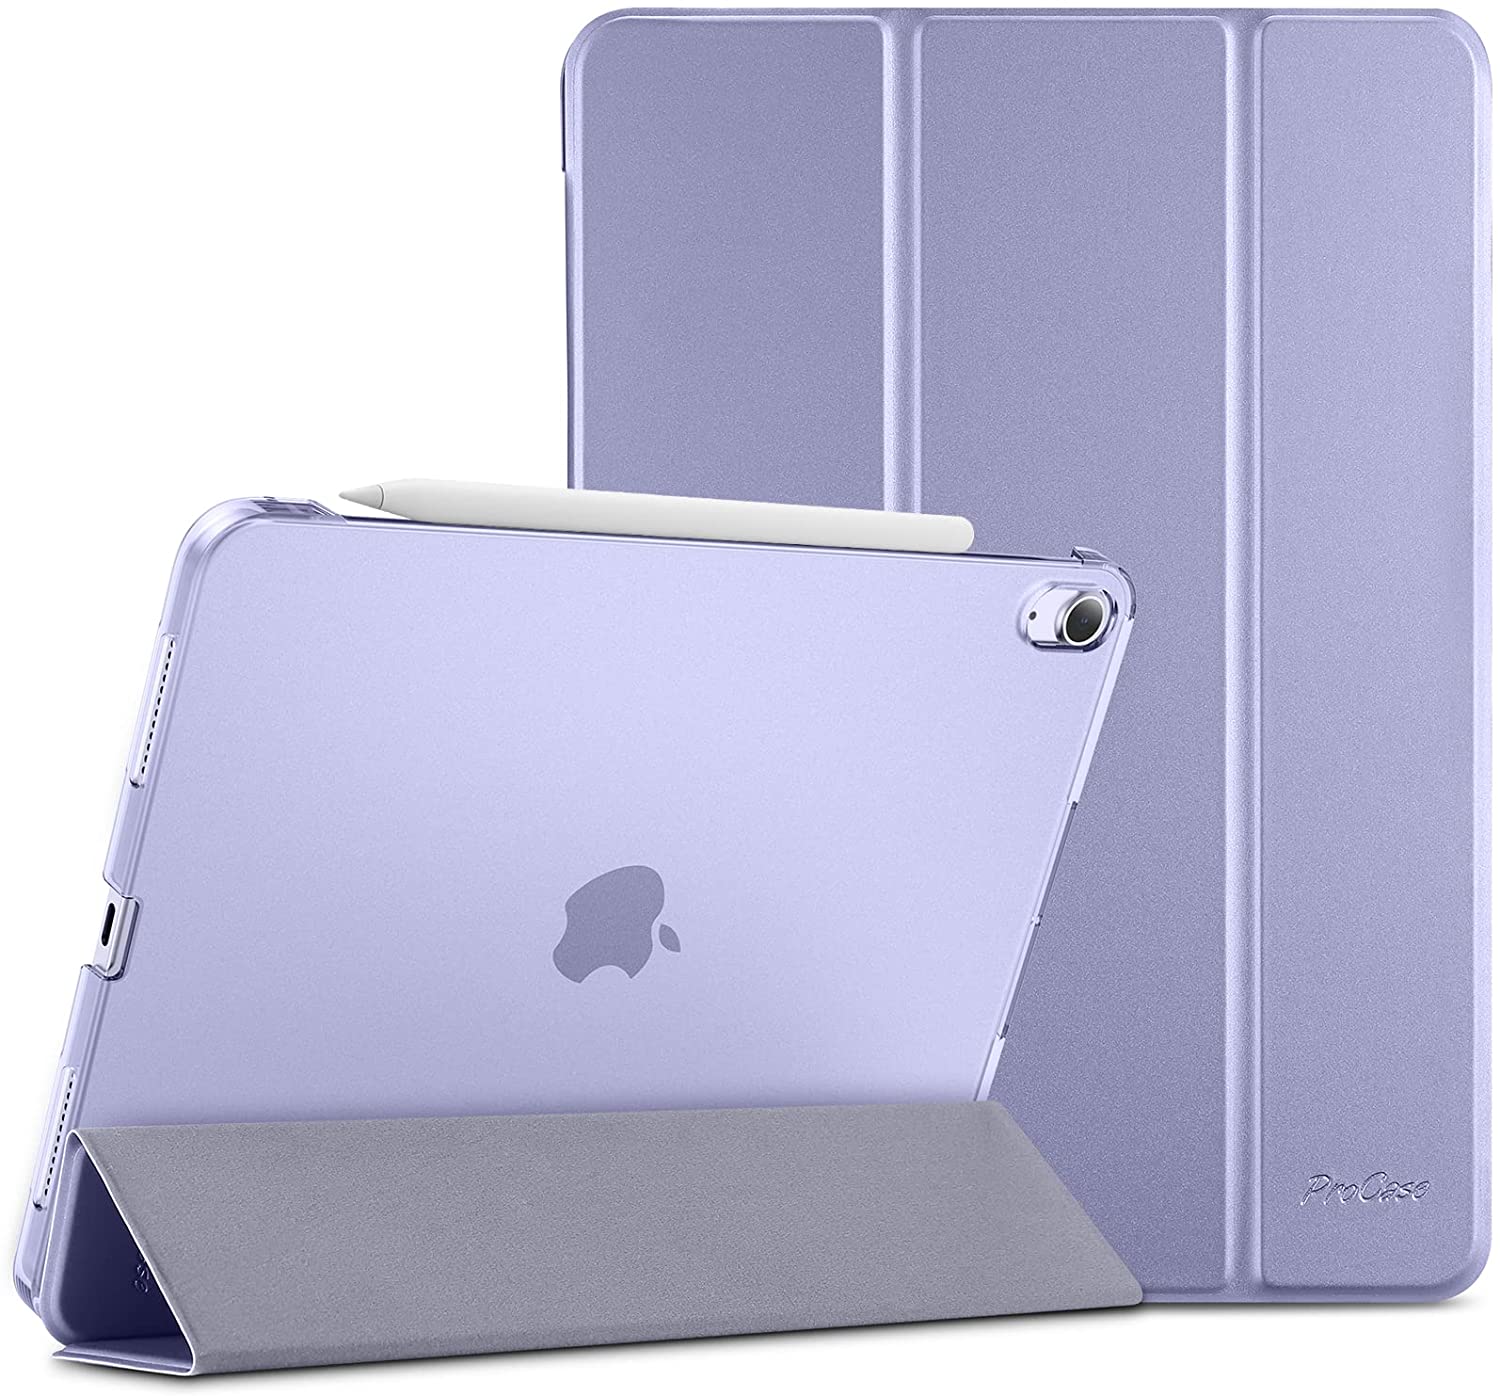 iPad Air 4th Gen/ iPad Air 5th Gen 10.9 Protective Case